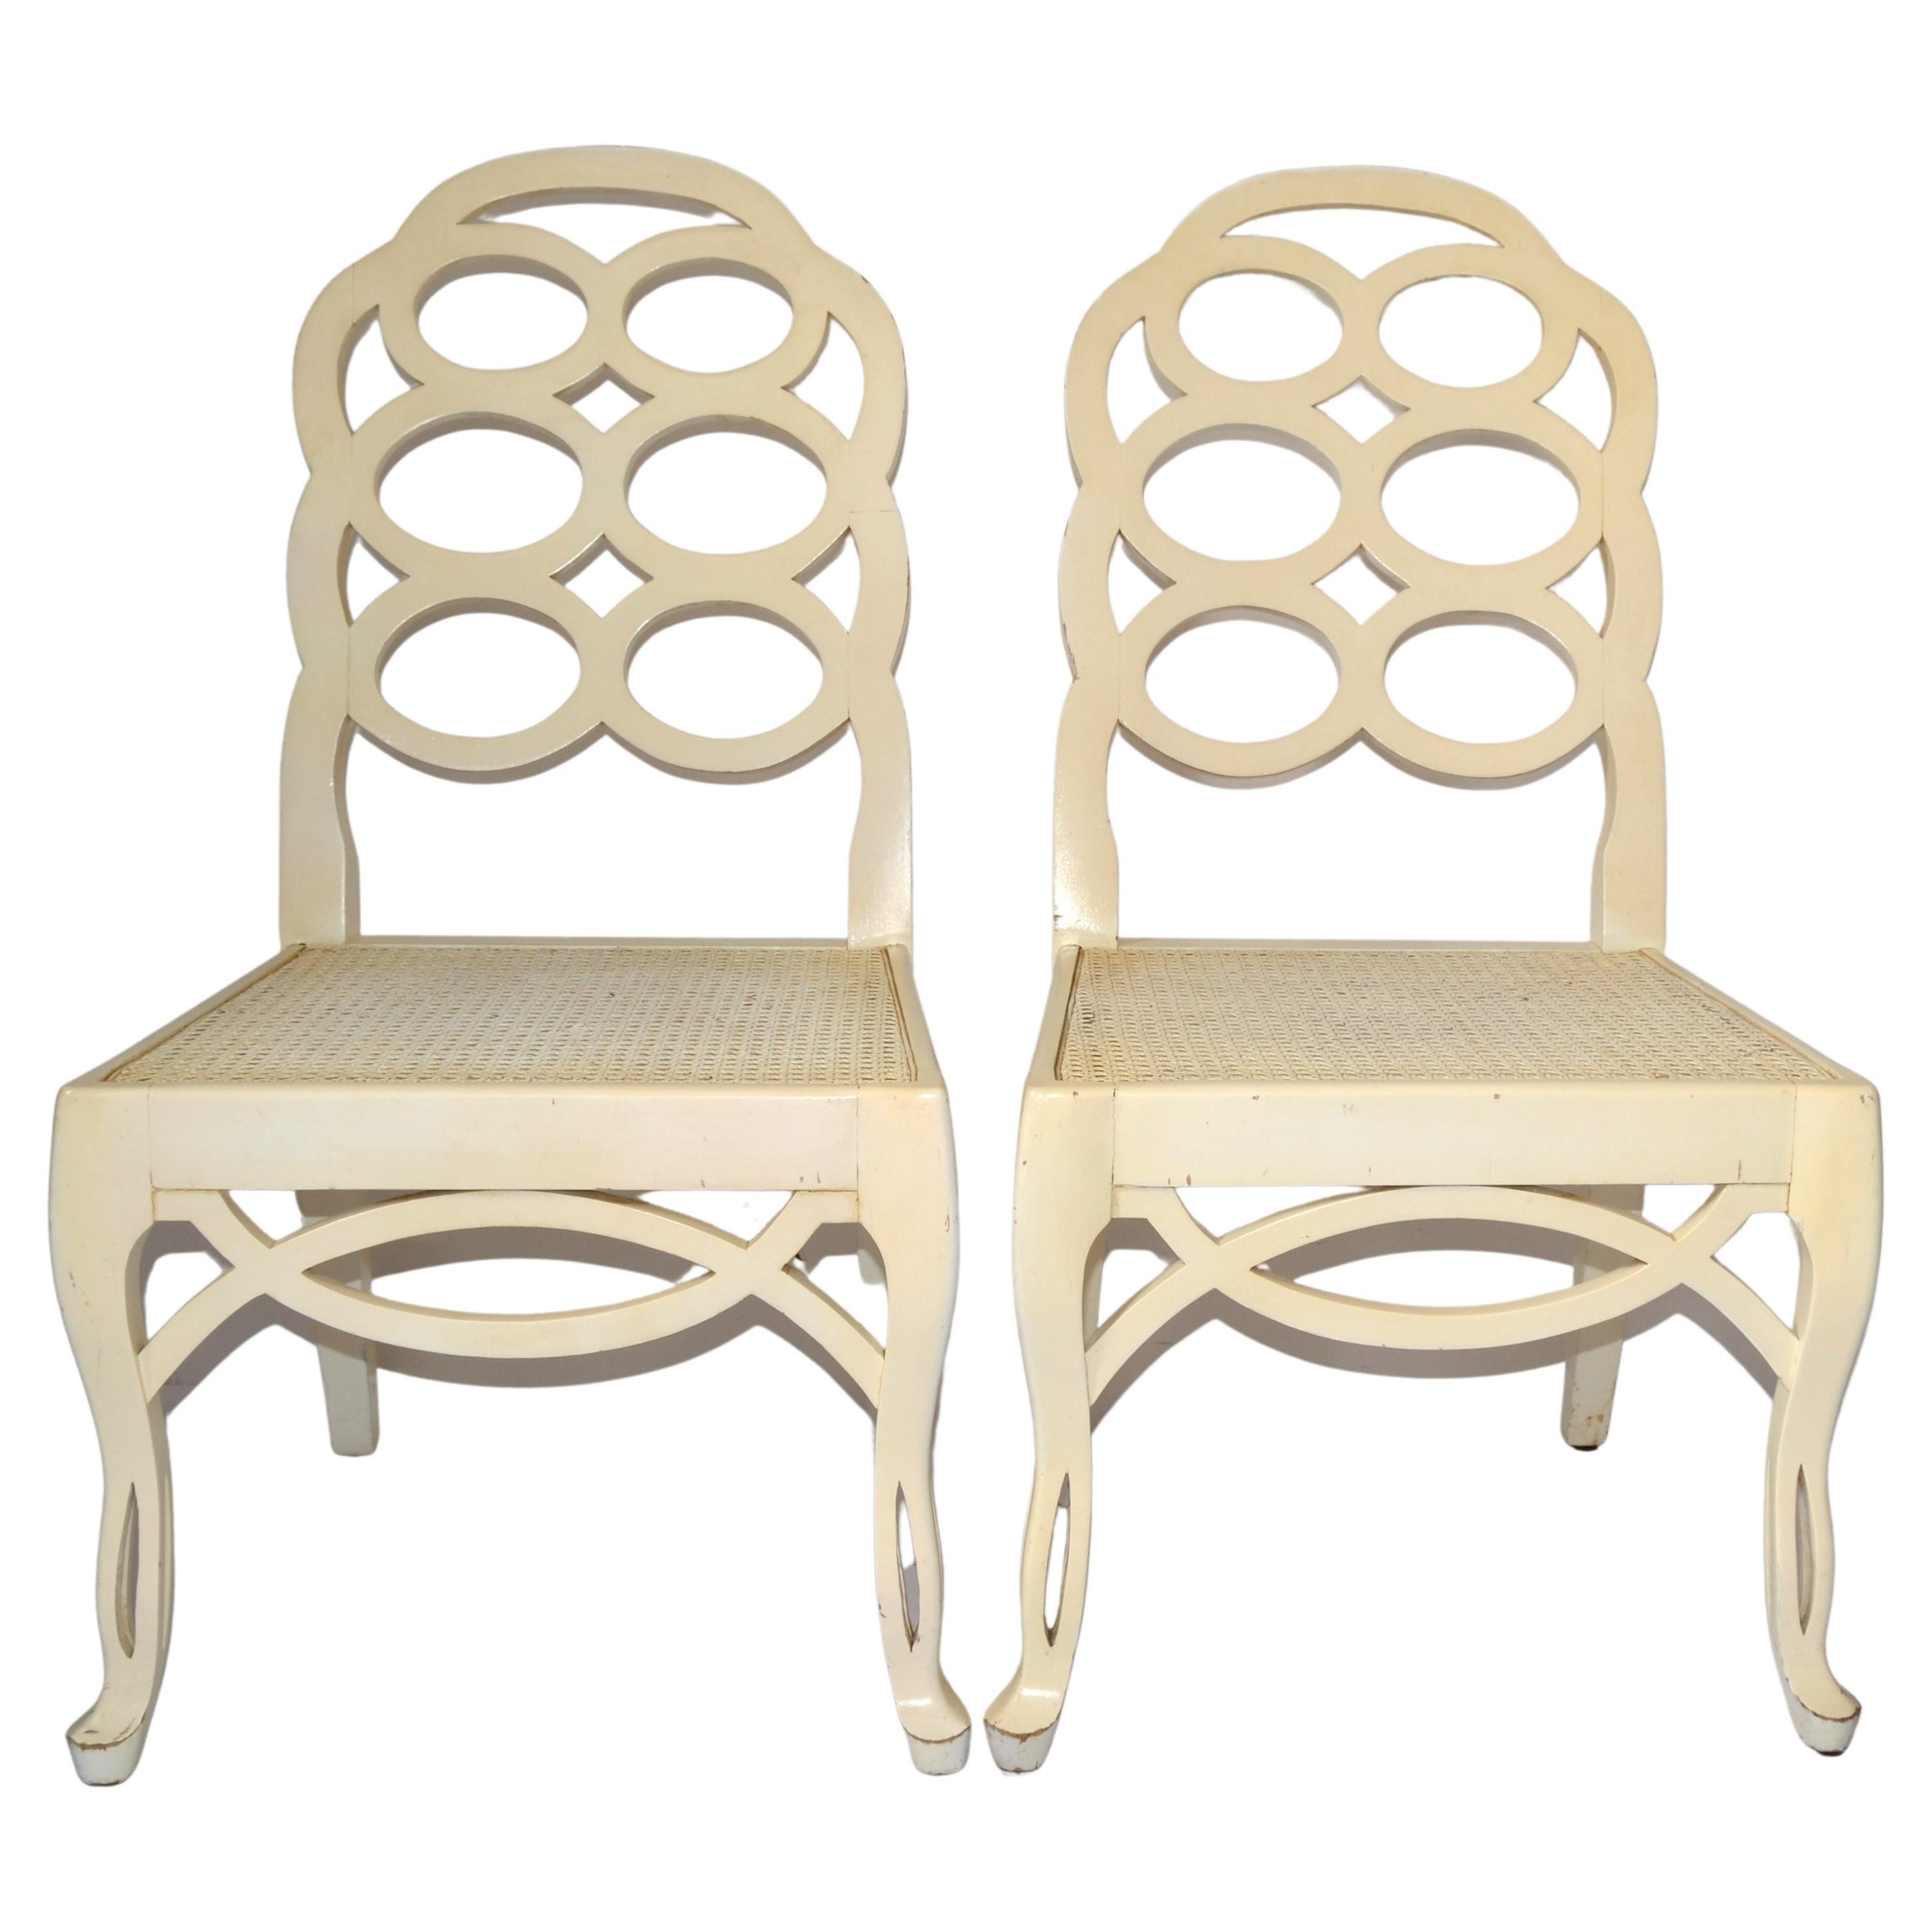 Pair of Frances Elkins Wood Cane Seat Loop Backrest Beige Side Chairs Regency 